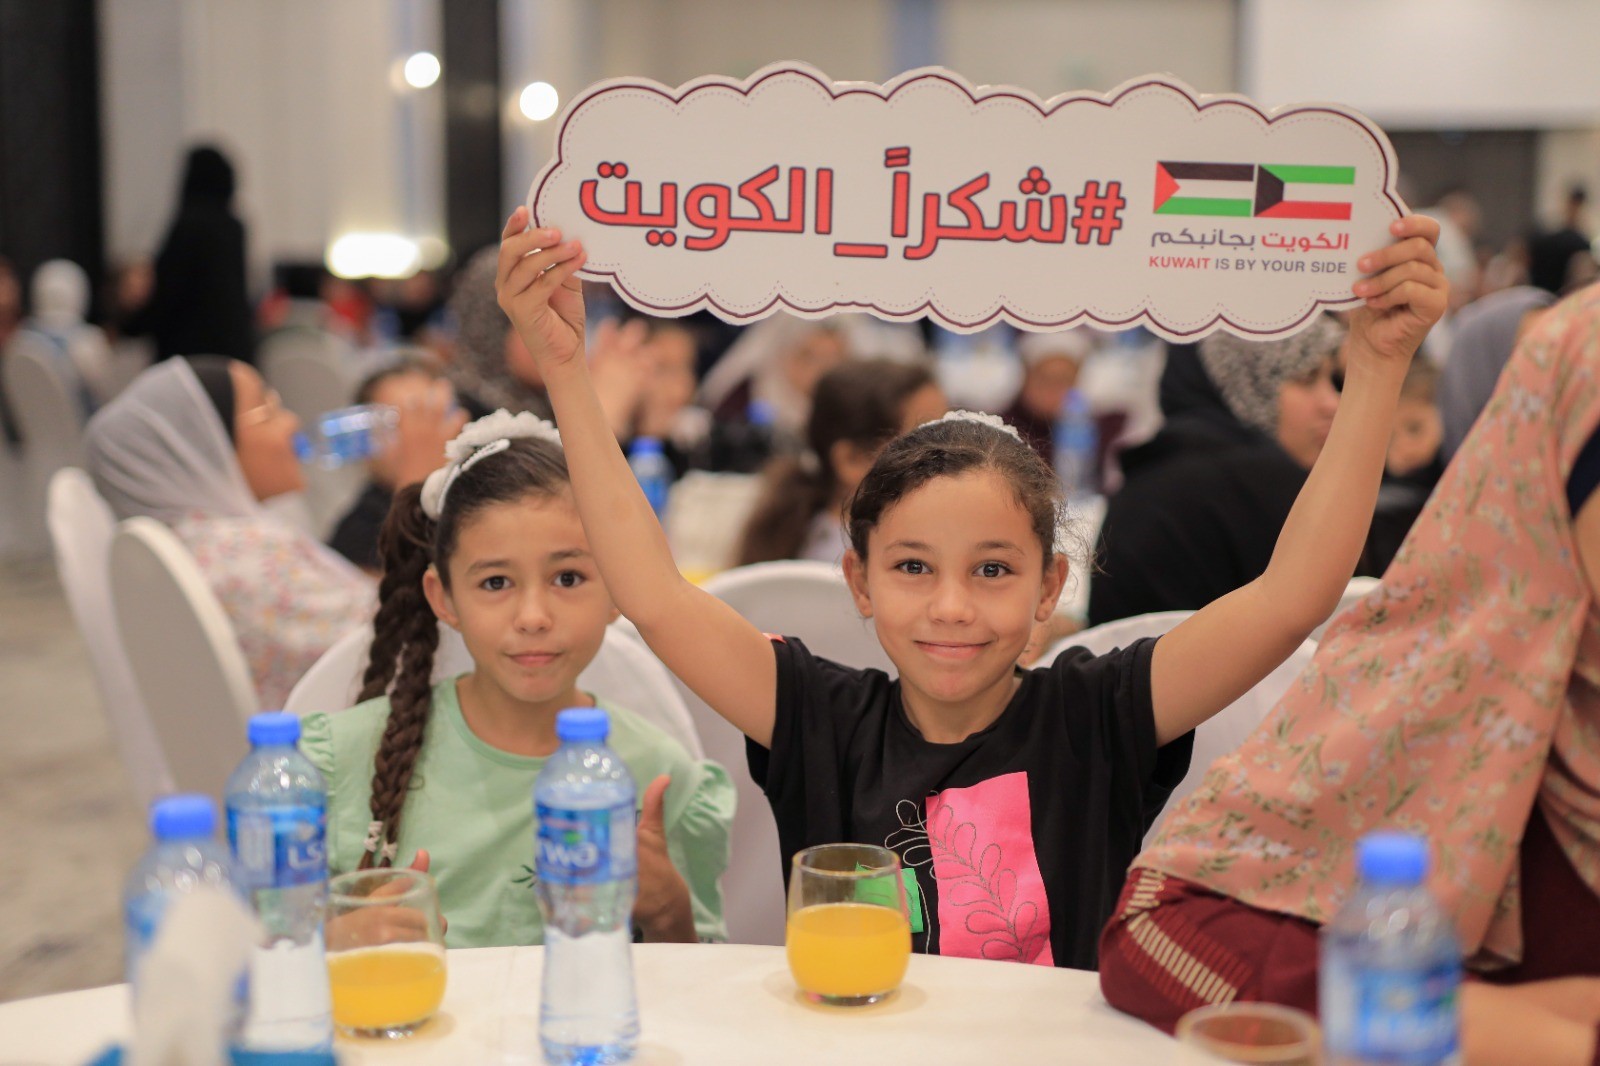 جمعية رحمة حول العالم تطلق سلسة مشاريع إغاثية في قطاع غزة 221.jpg